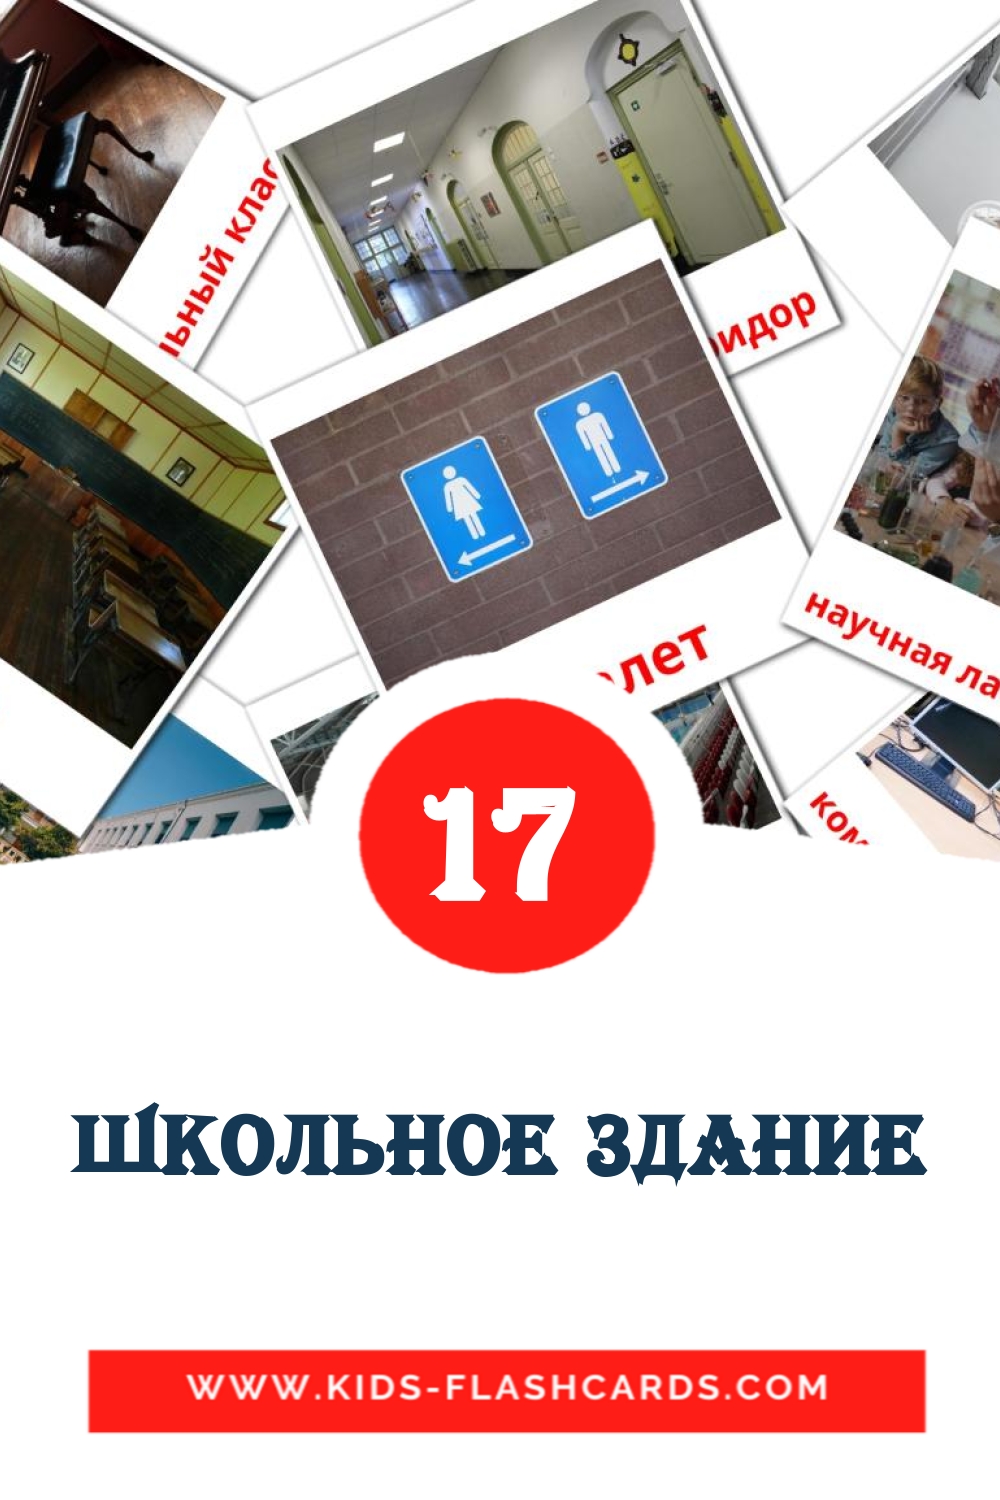 17 Школьное здание fotokaarten voor kleuters in het rus